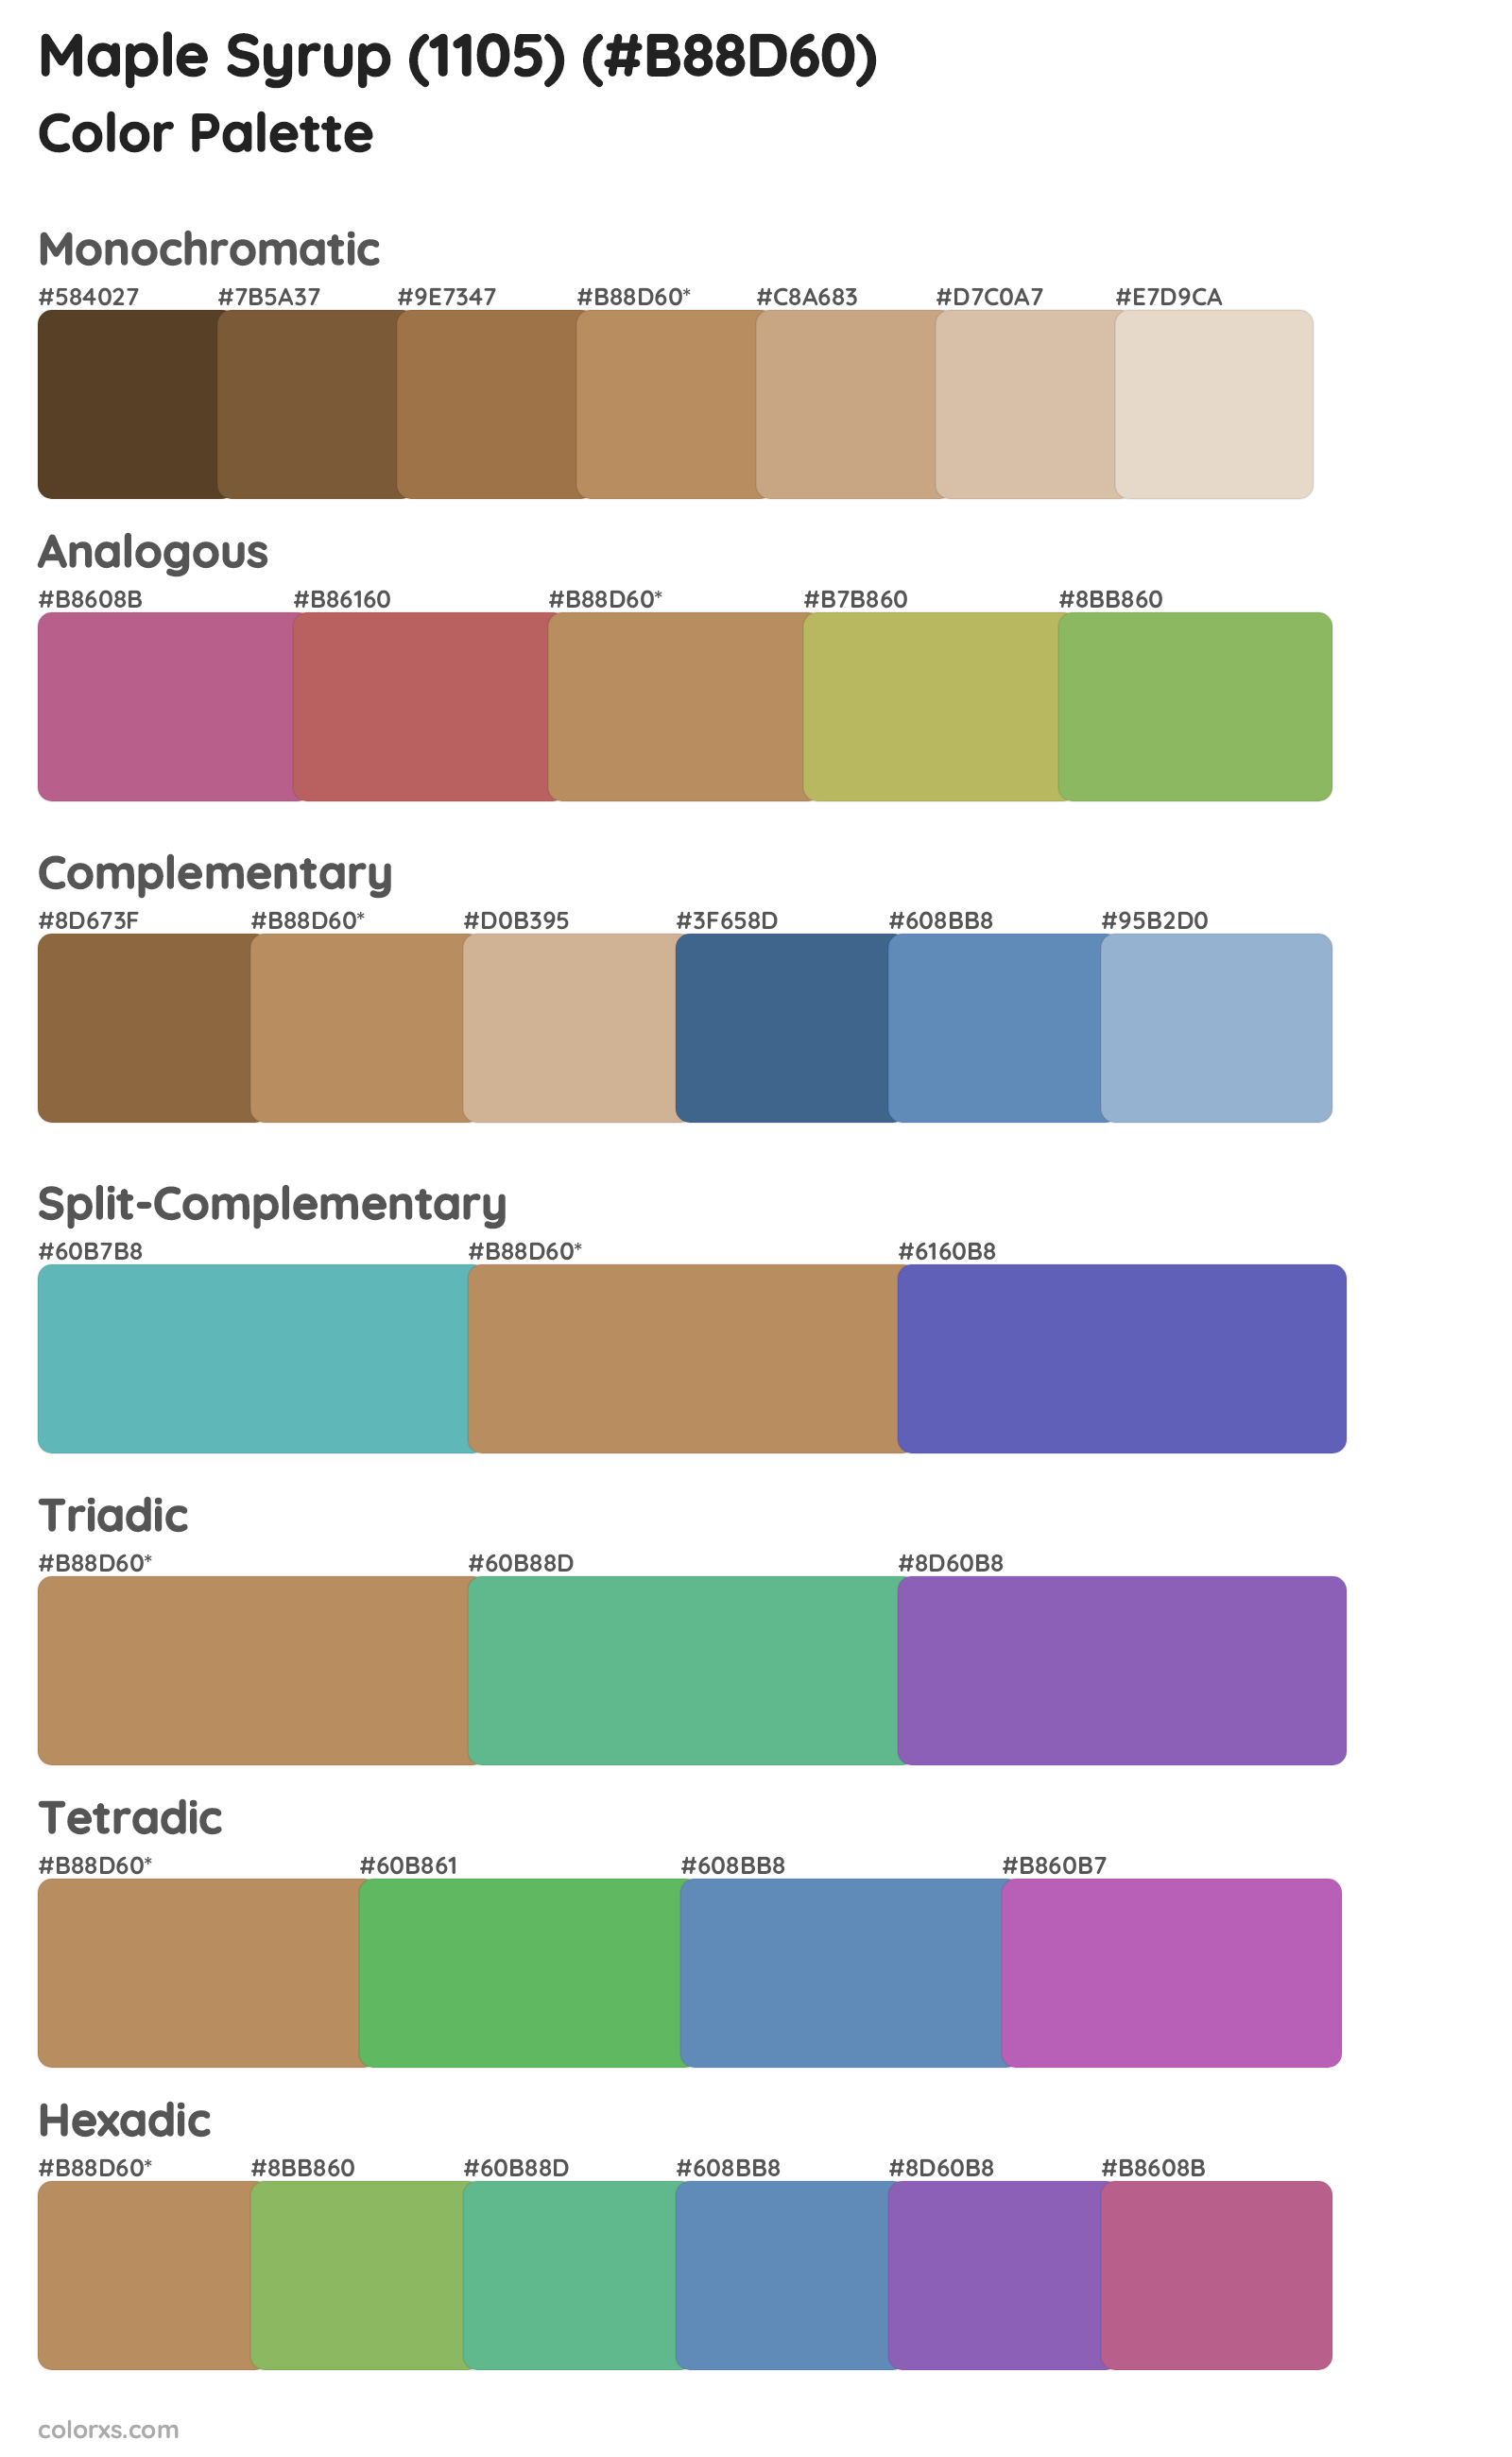 Maple Syrup (1105) Color Scheme Palettes